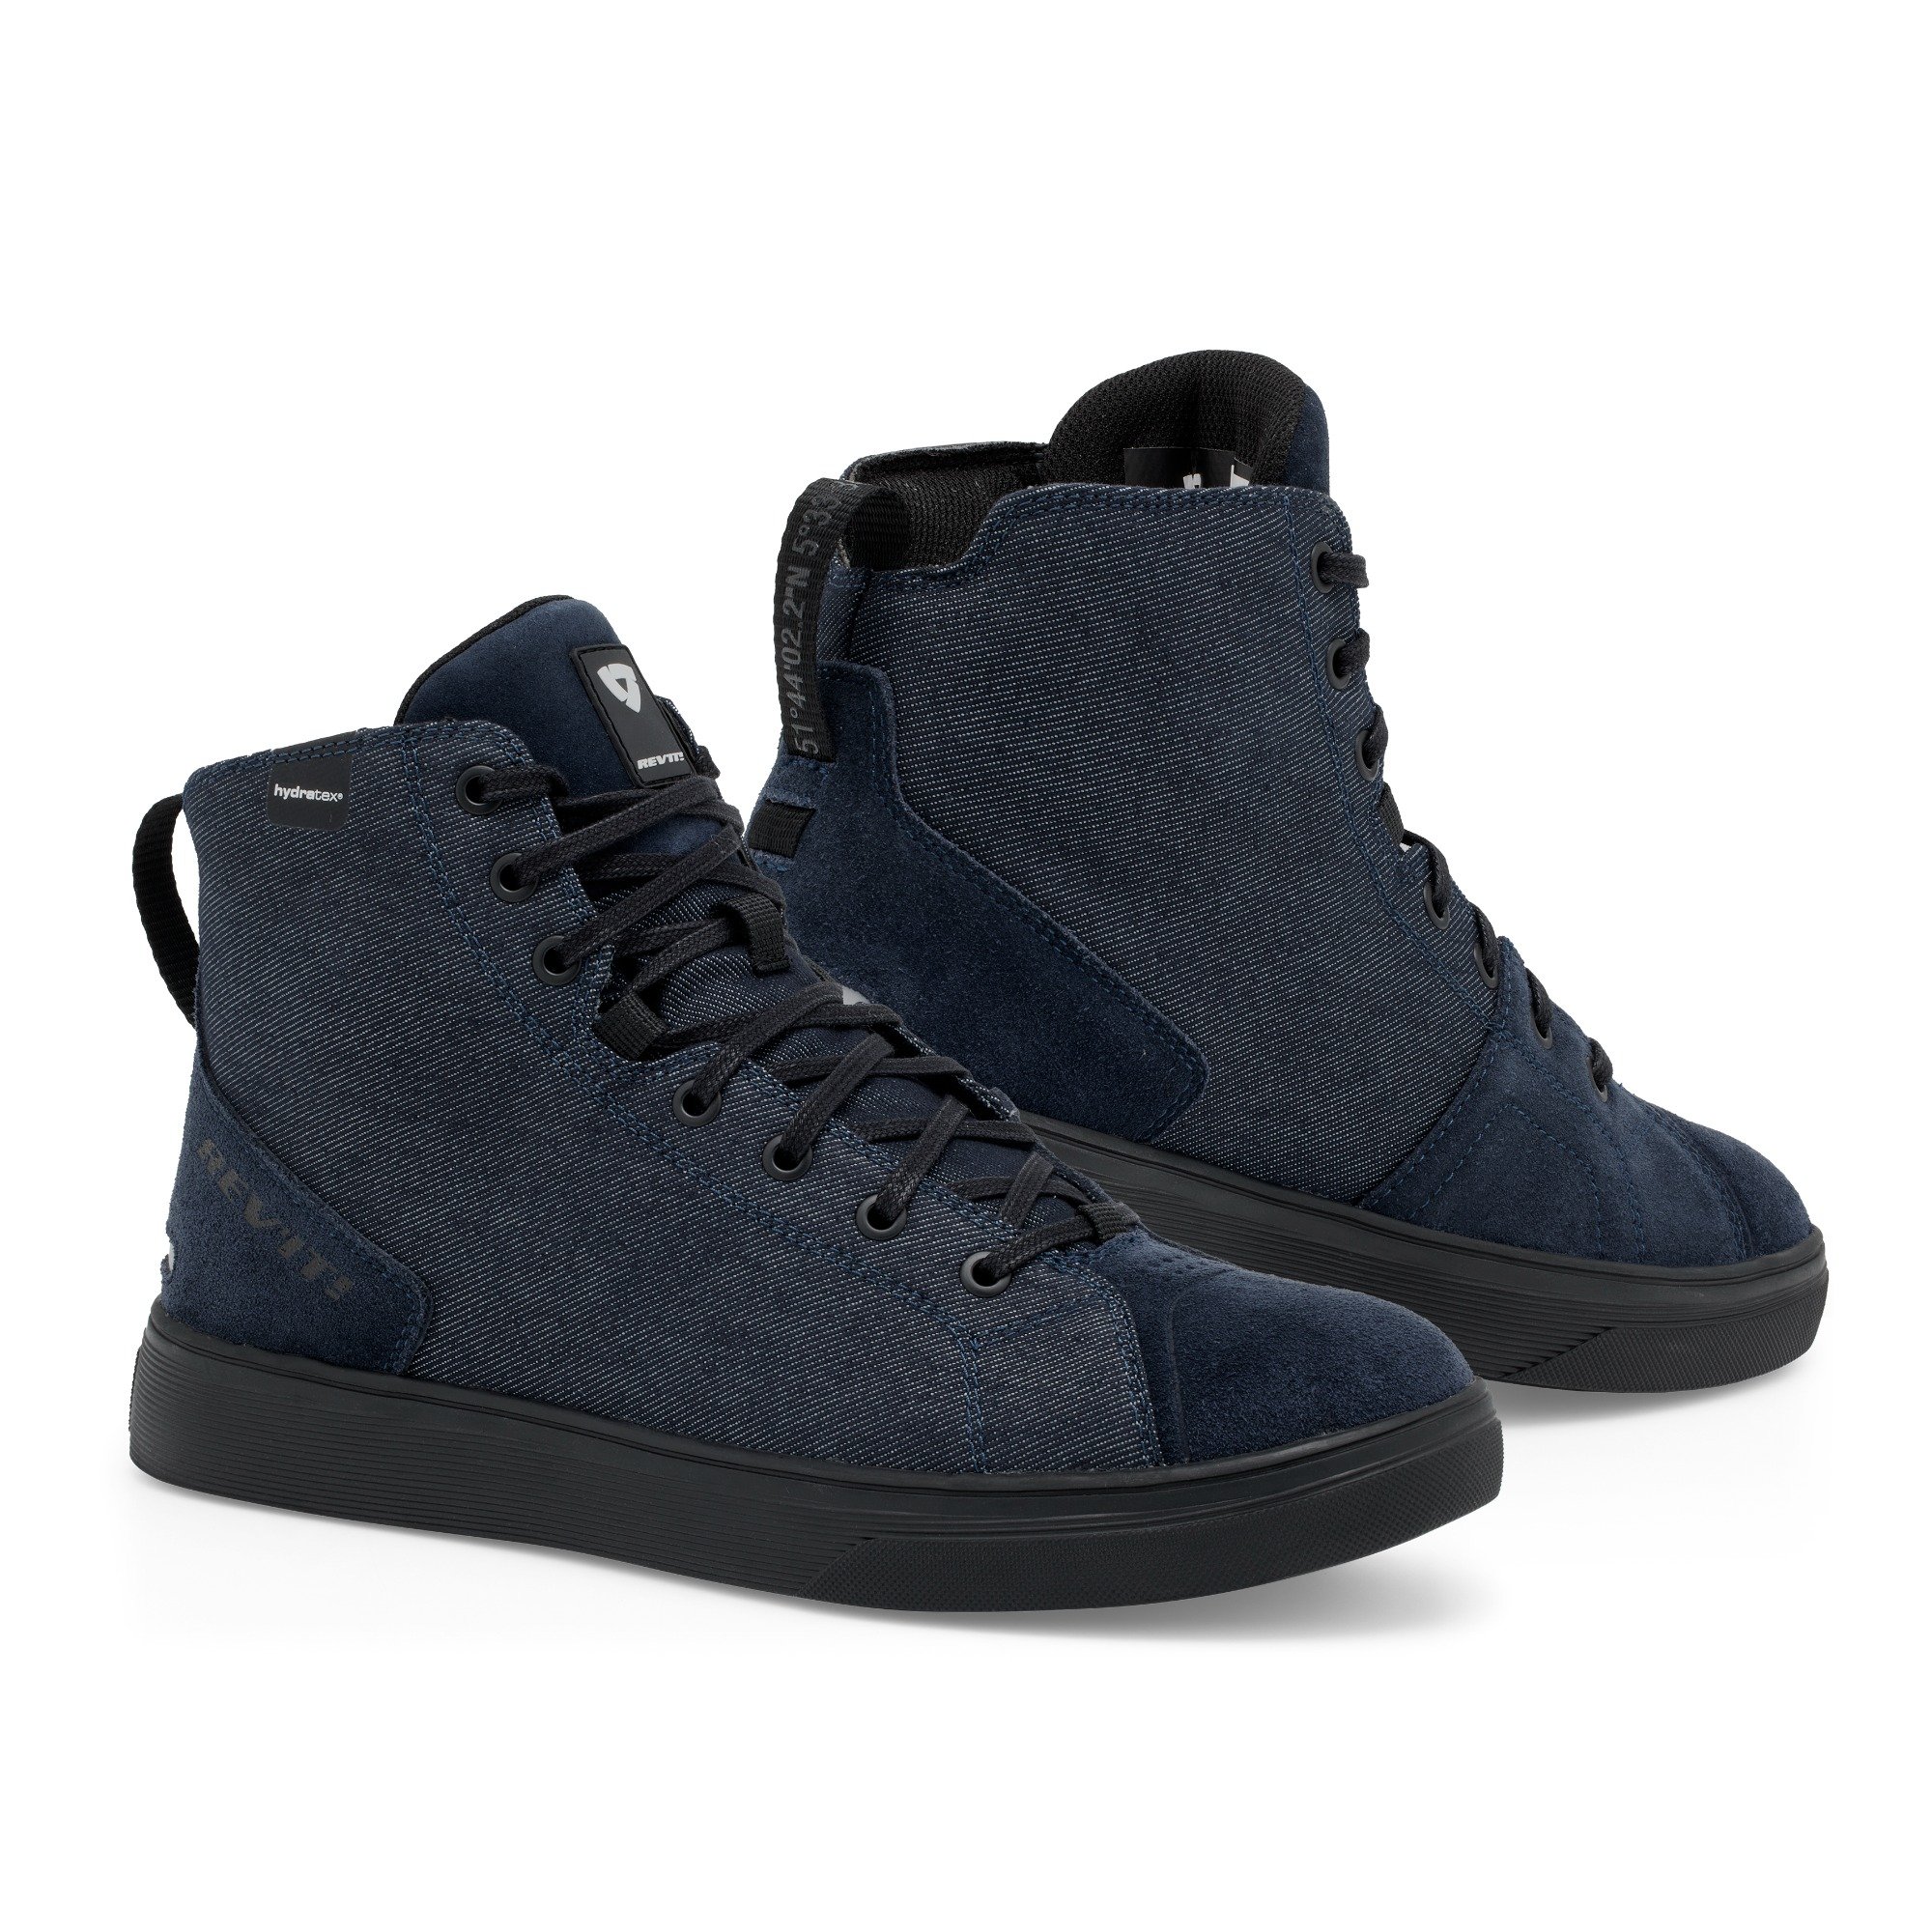 Image of REV'IT! Delta H2O Shoes Dark Blue Black Size 39 EN